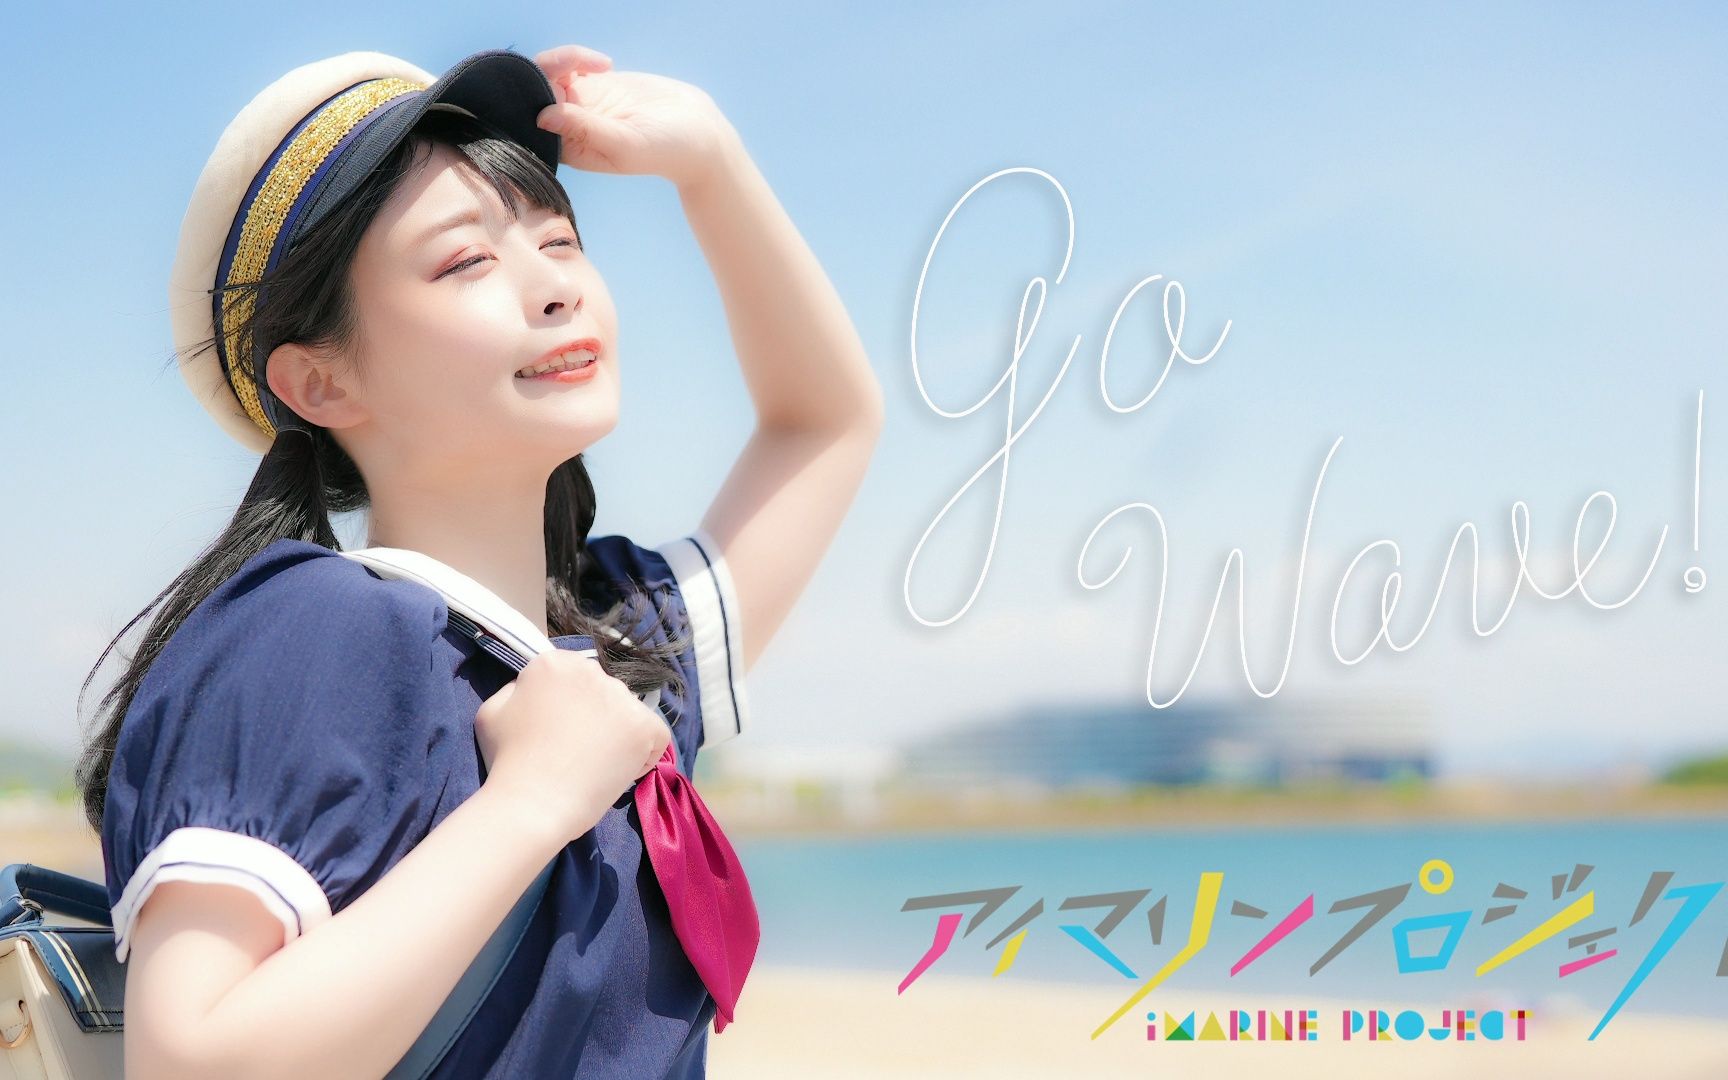 【足太Penta】Go Wave!【iMarine Project】